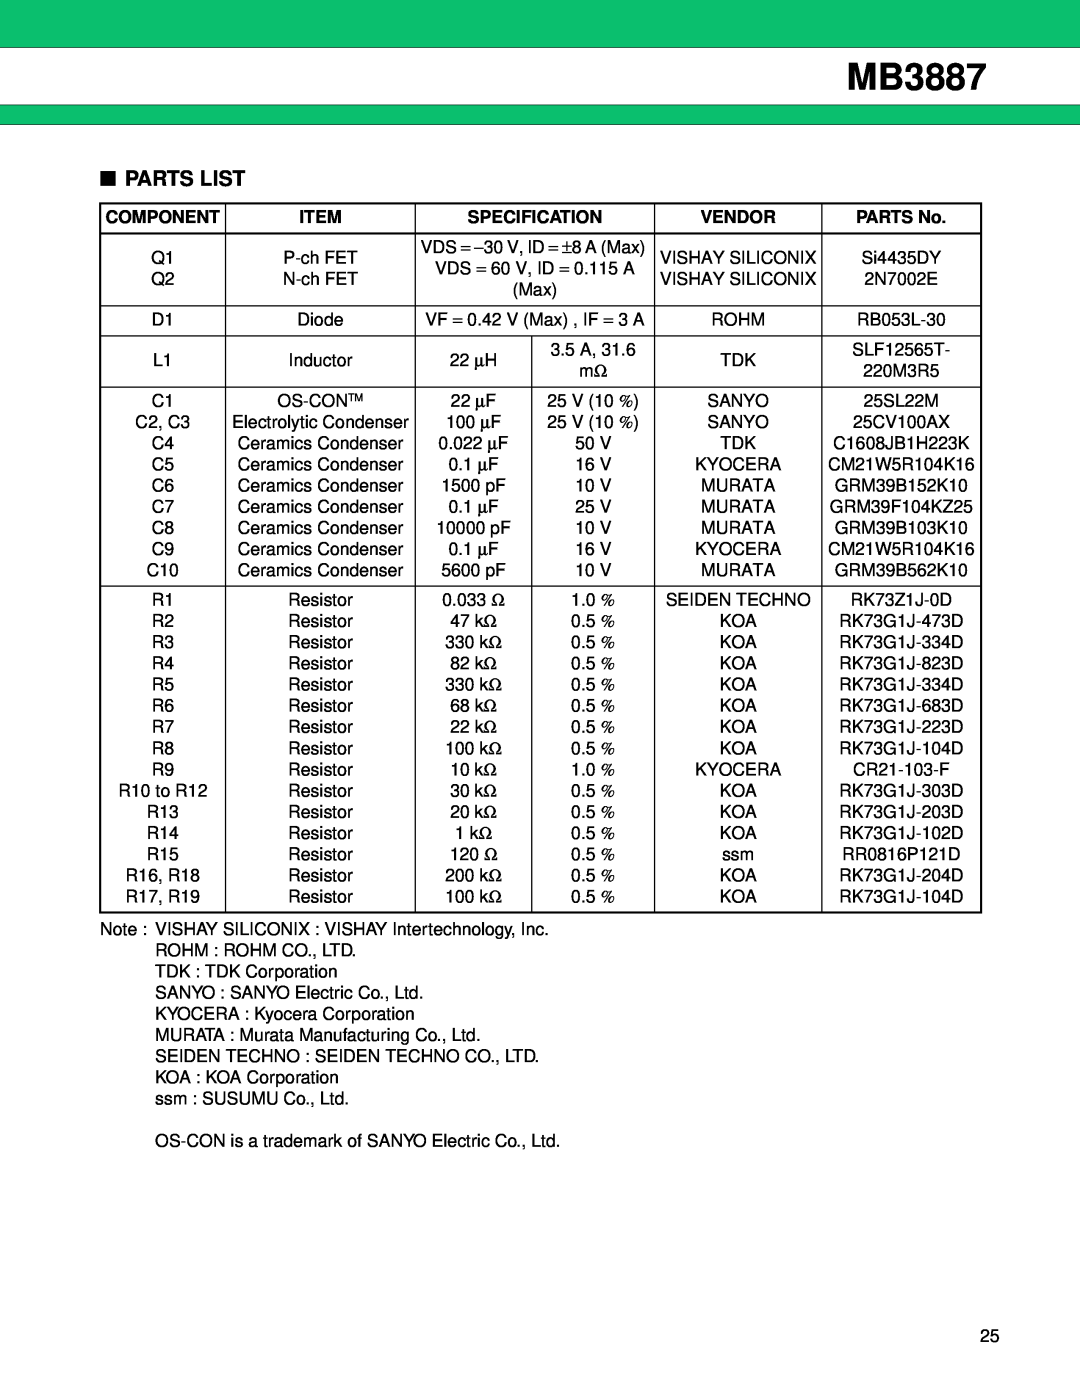 Fujitsu MB3887 manual Parts List, Component, Specification, Vendor, PARTS No 